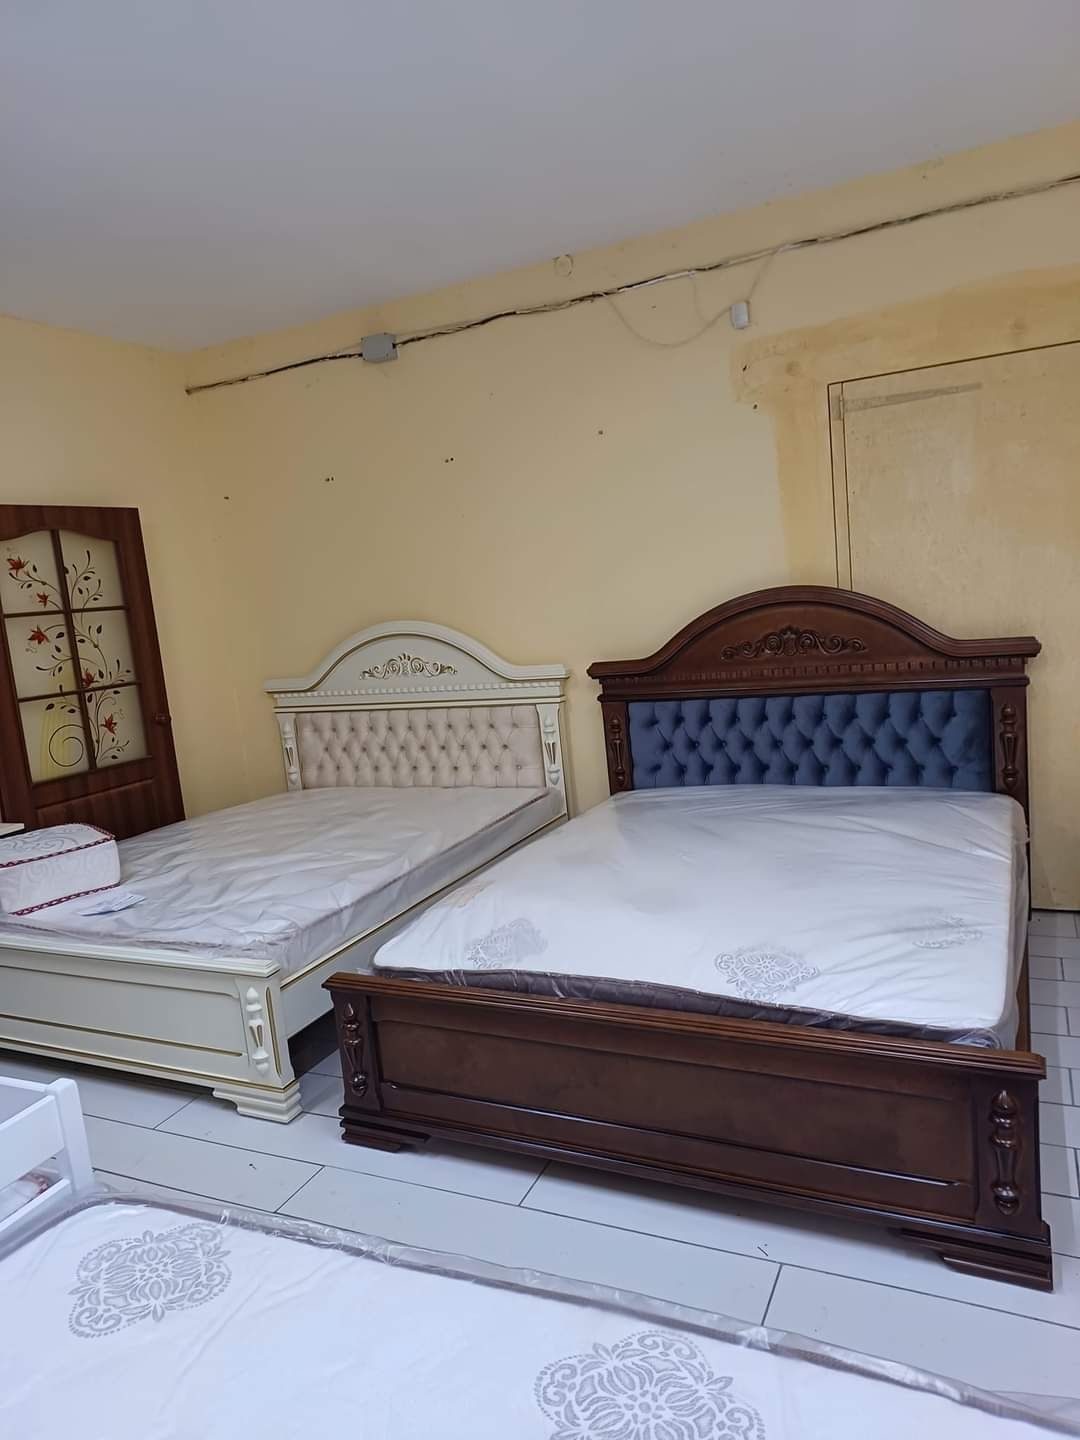 Ліжко  двохспальне з масива дерева + різьба .Внаявності на магазині